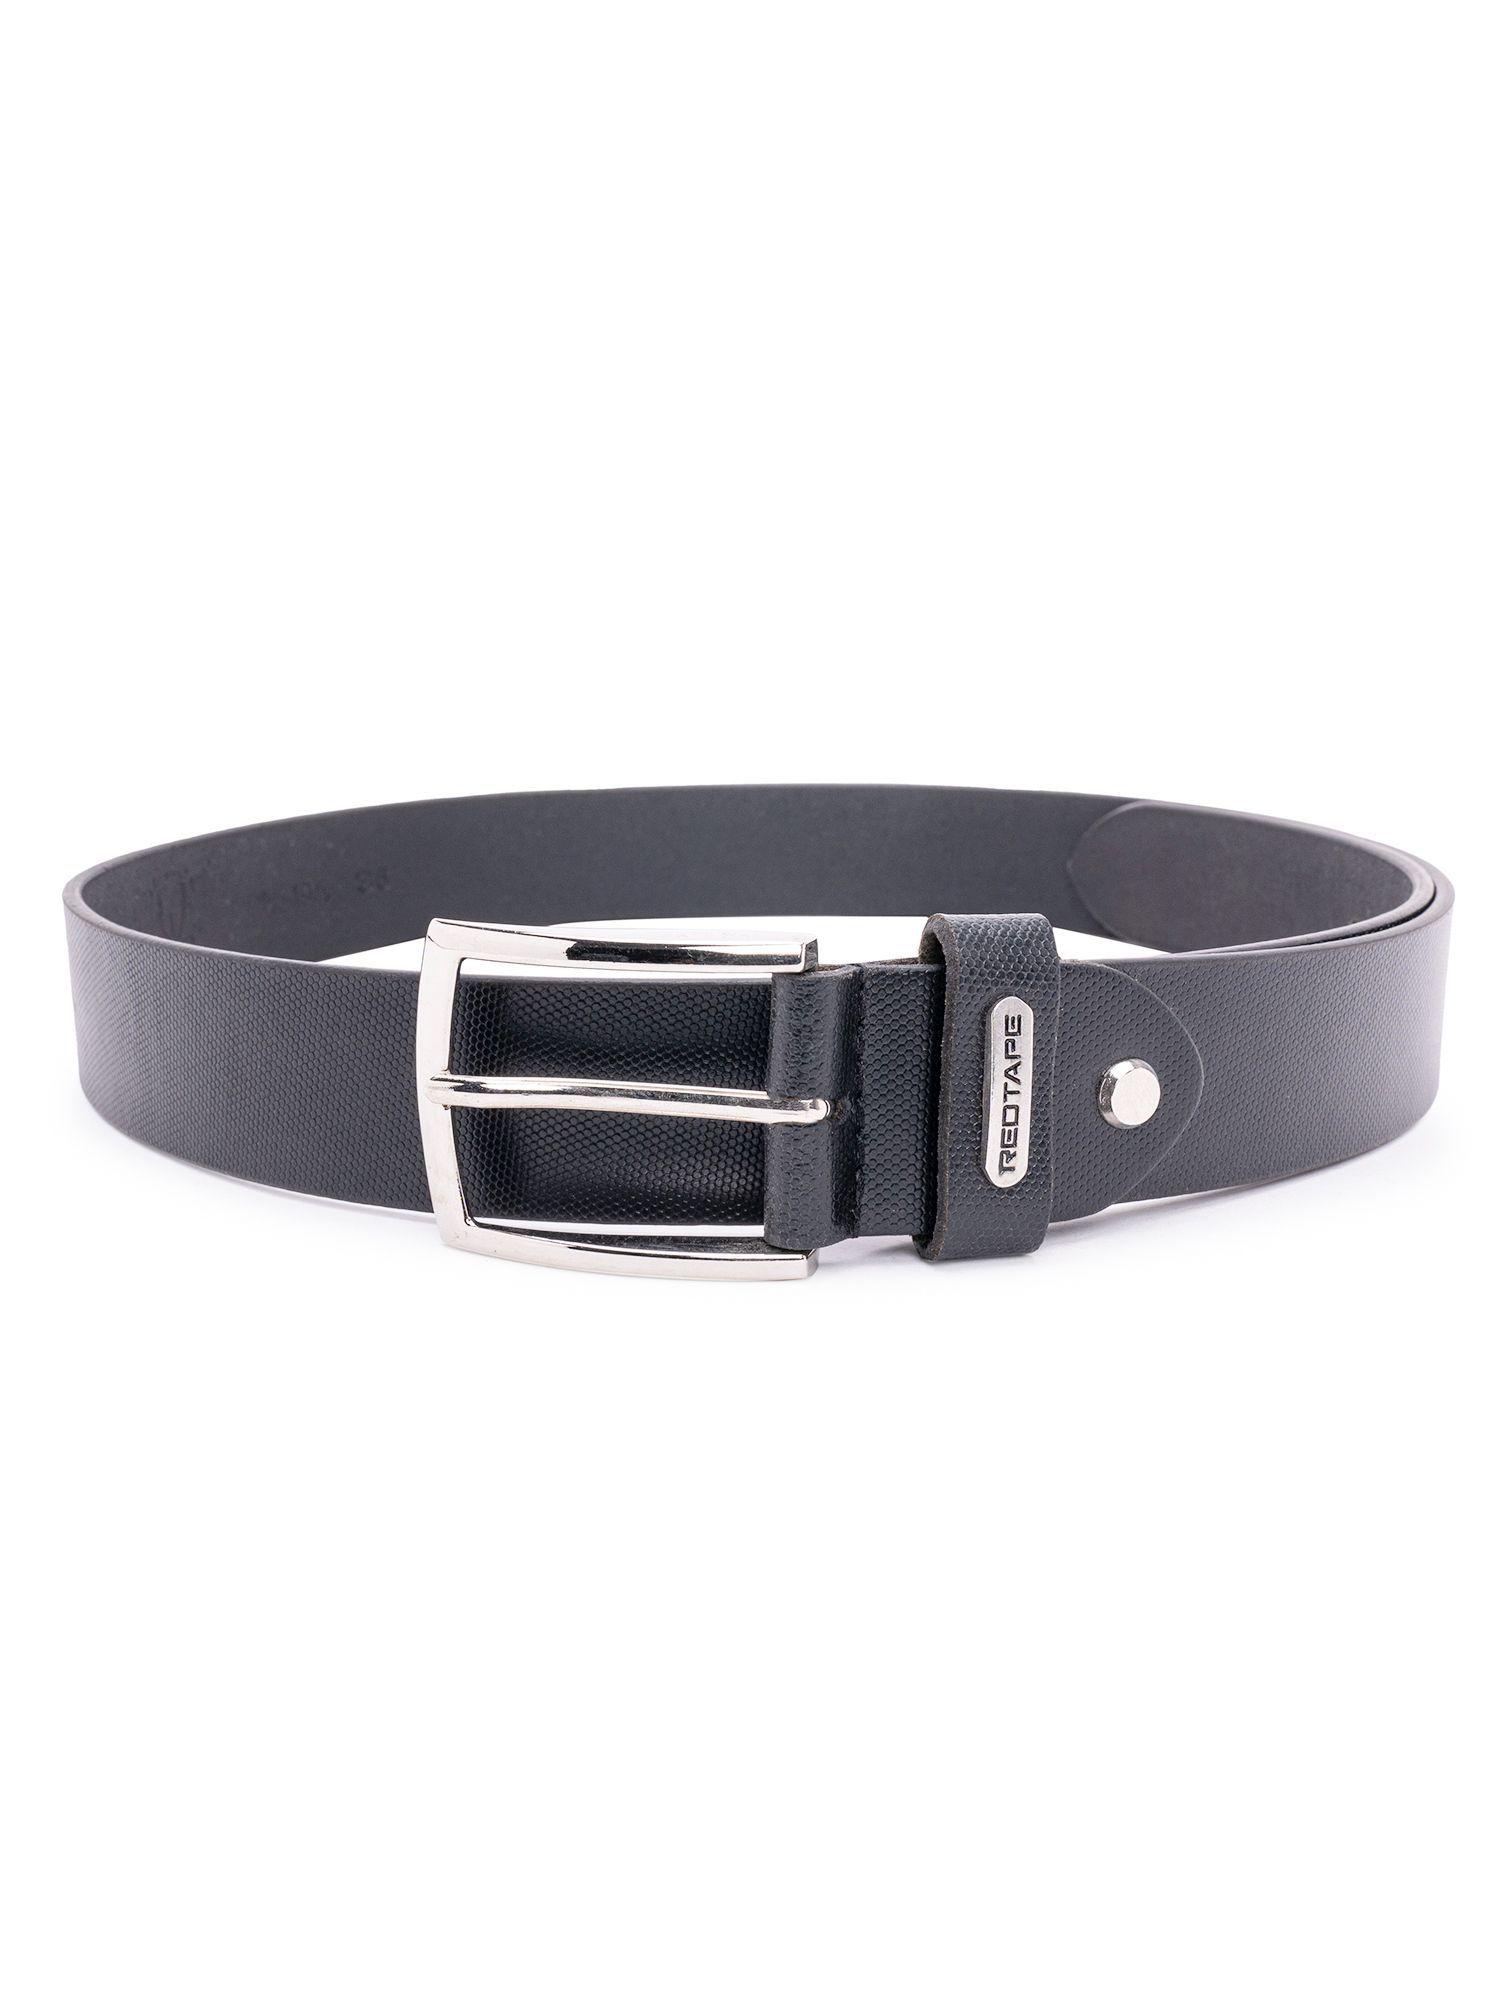 mens black leather formal belt